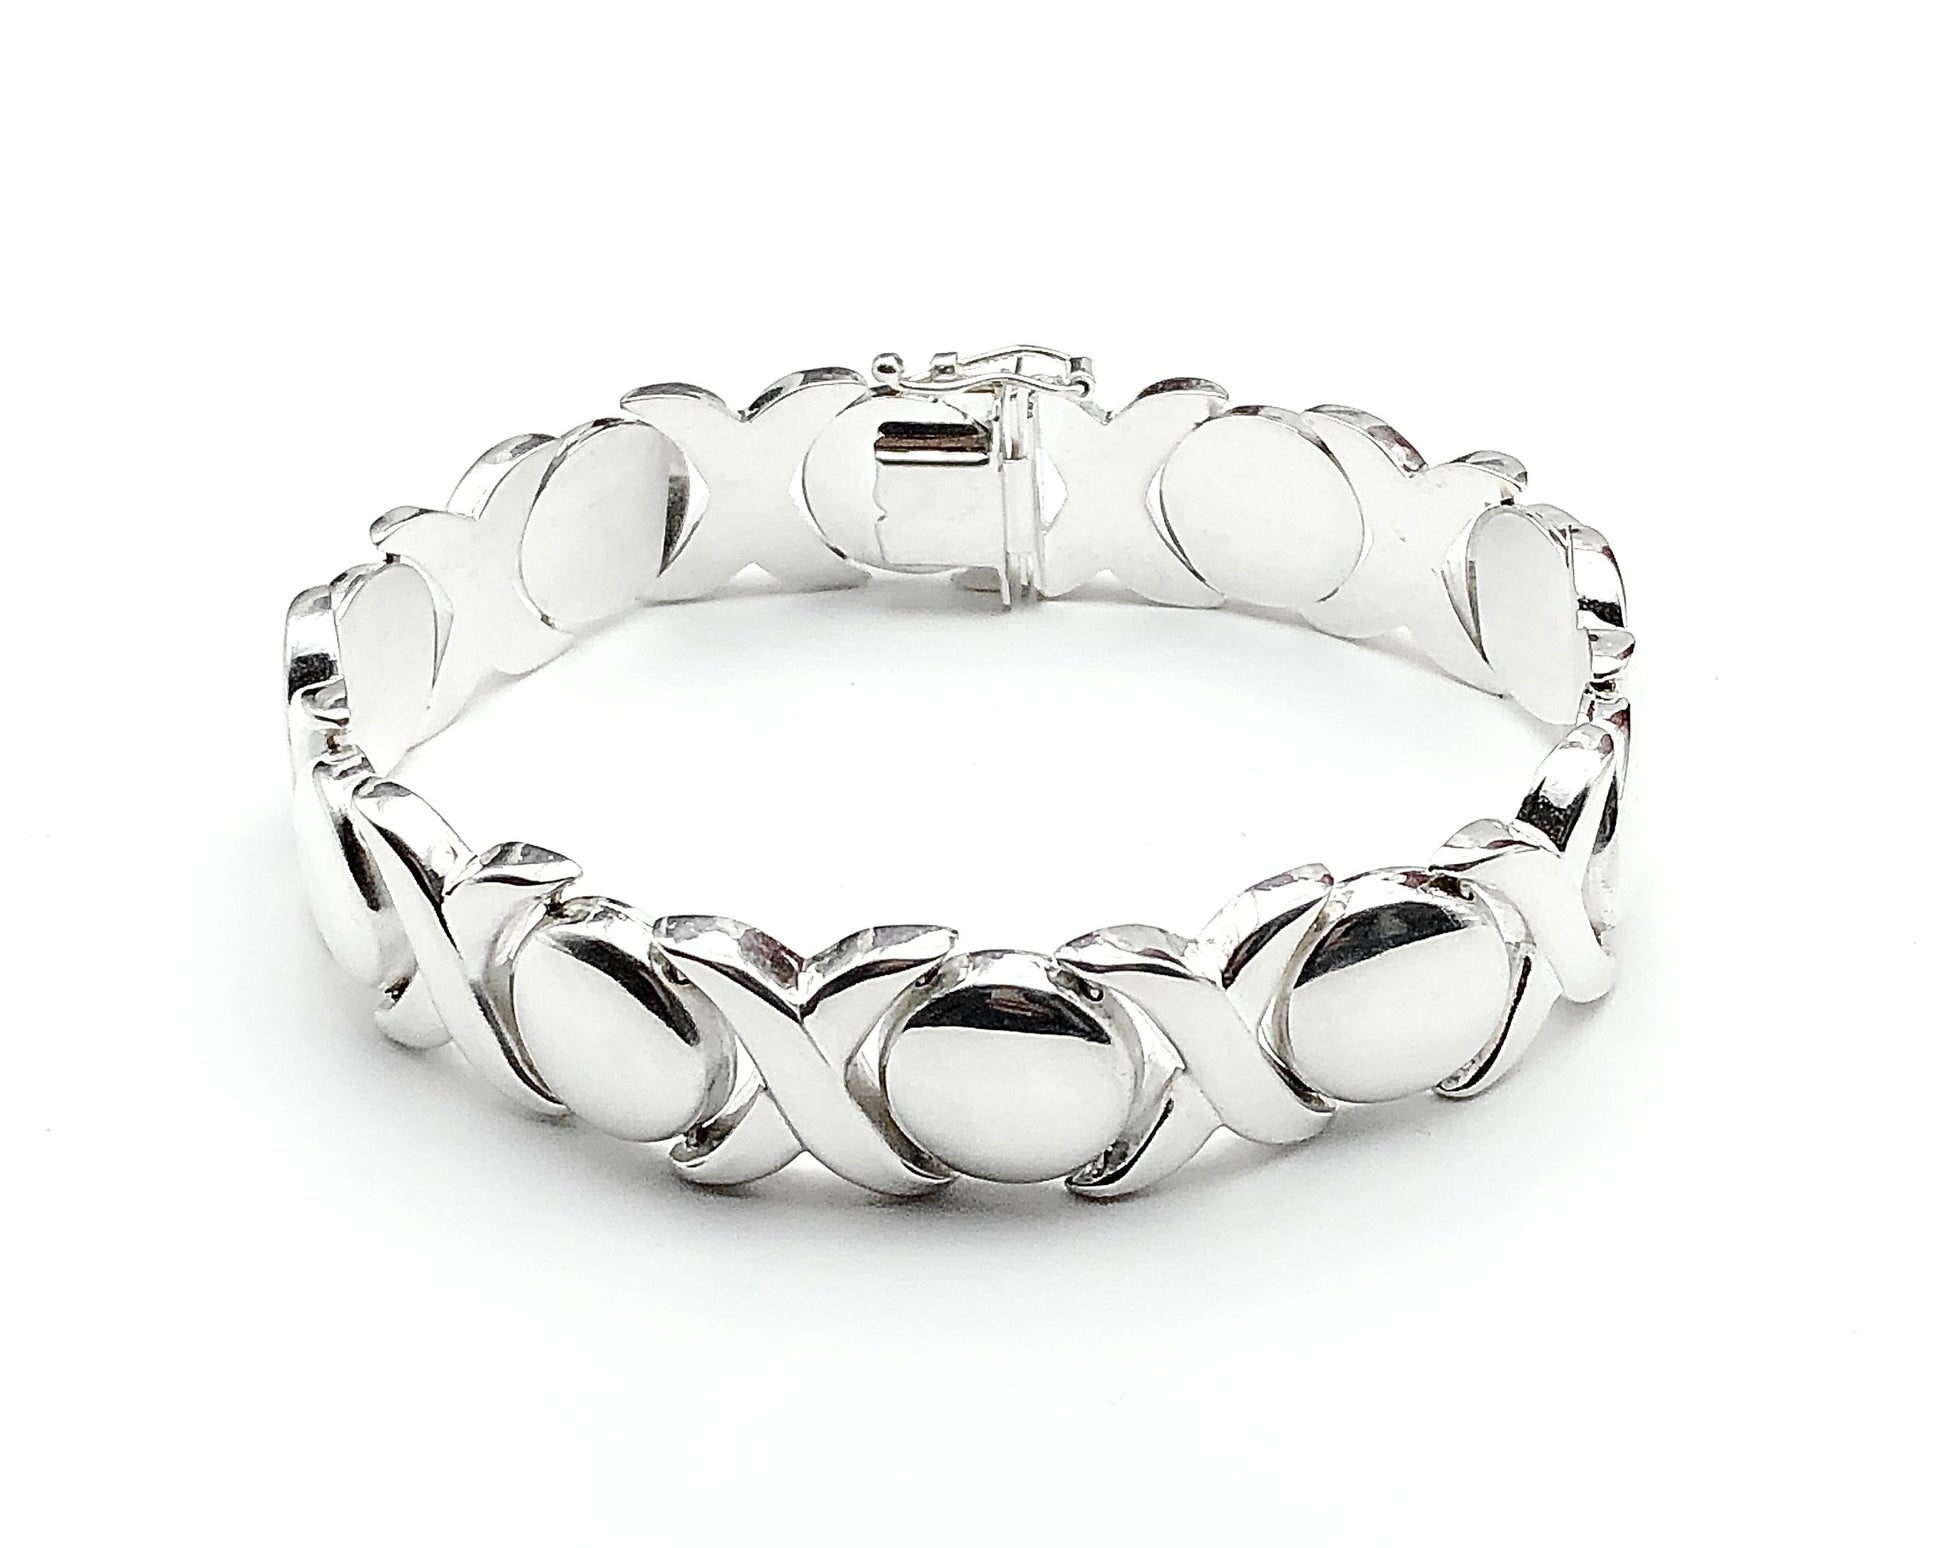 Sterling Silver Bracelet, 7.5" 14mm Wide Stampato Style XO Tennis Bracelet - Estate Jewelry online - Blingschlingers